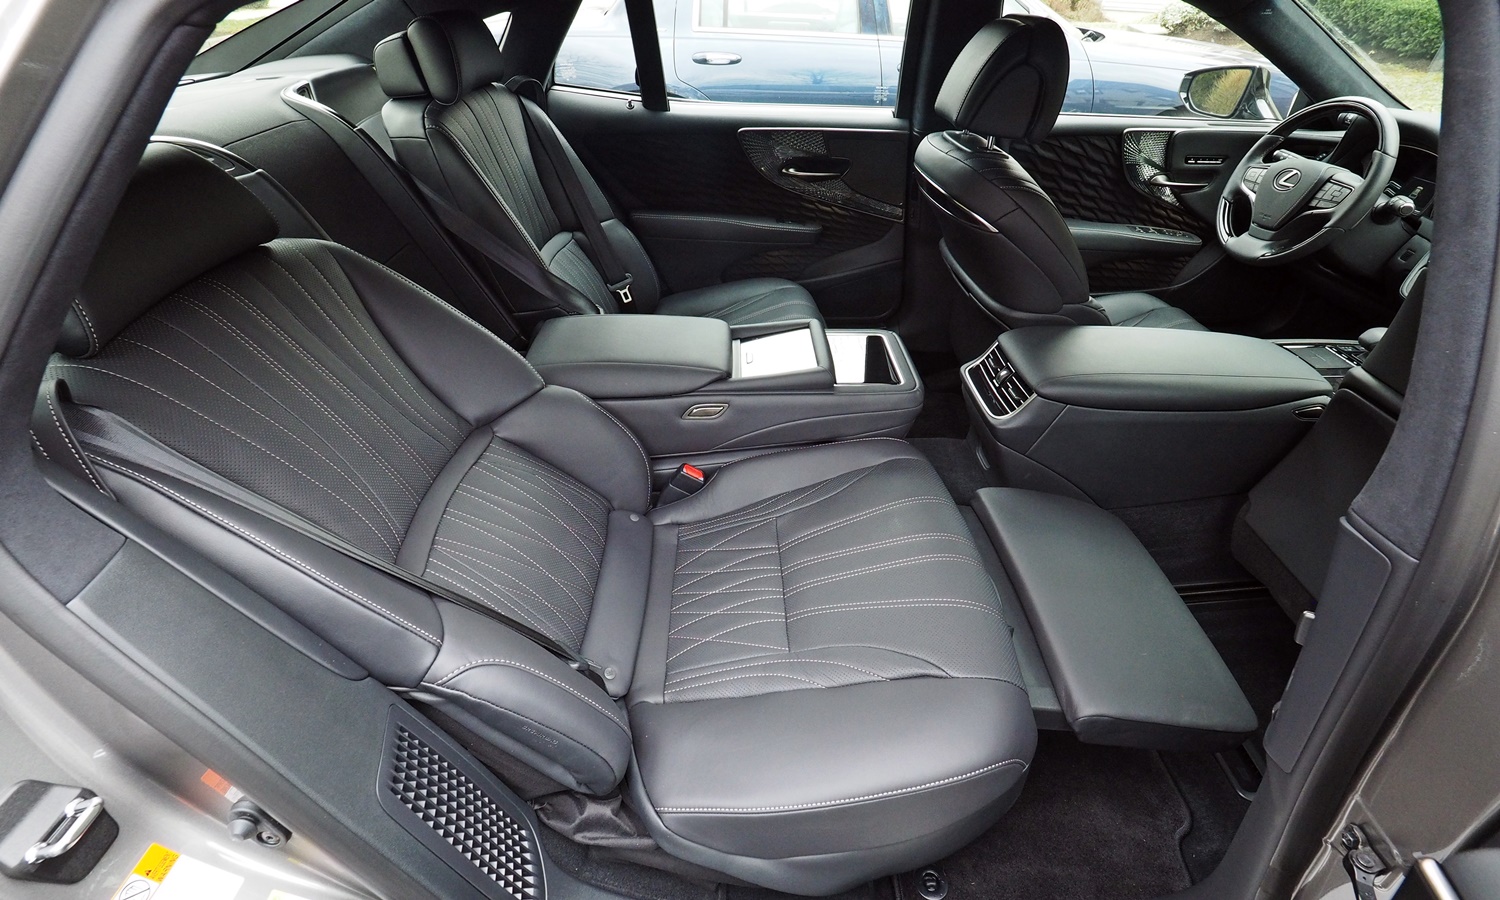 LS Reviews: Lexus LS 500h rear recliner